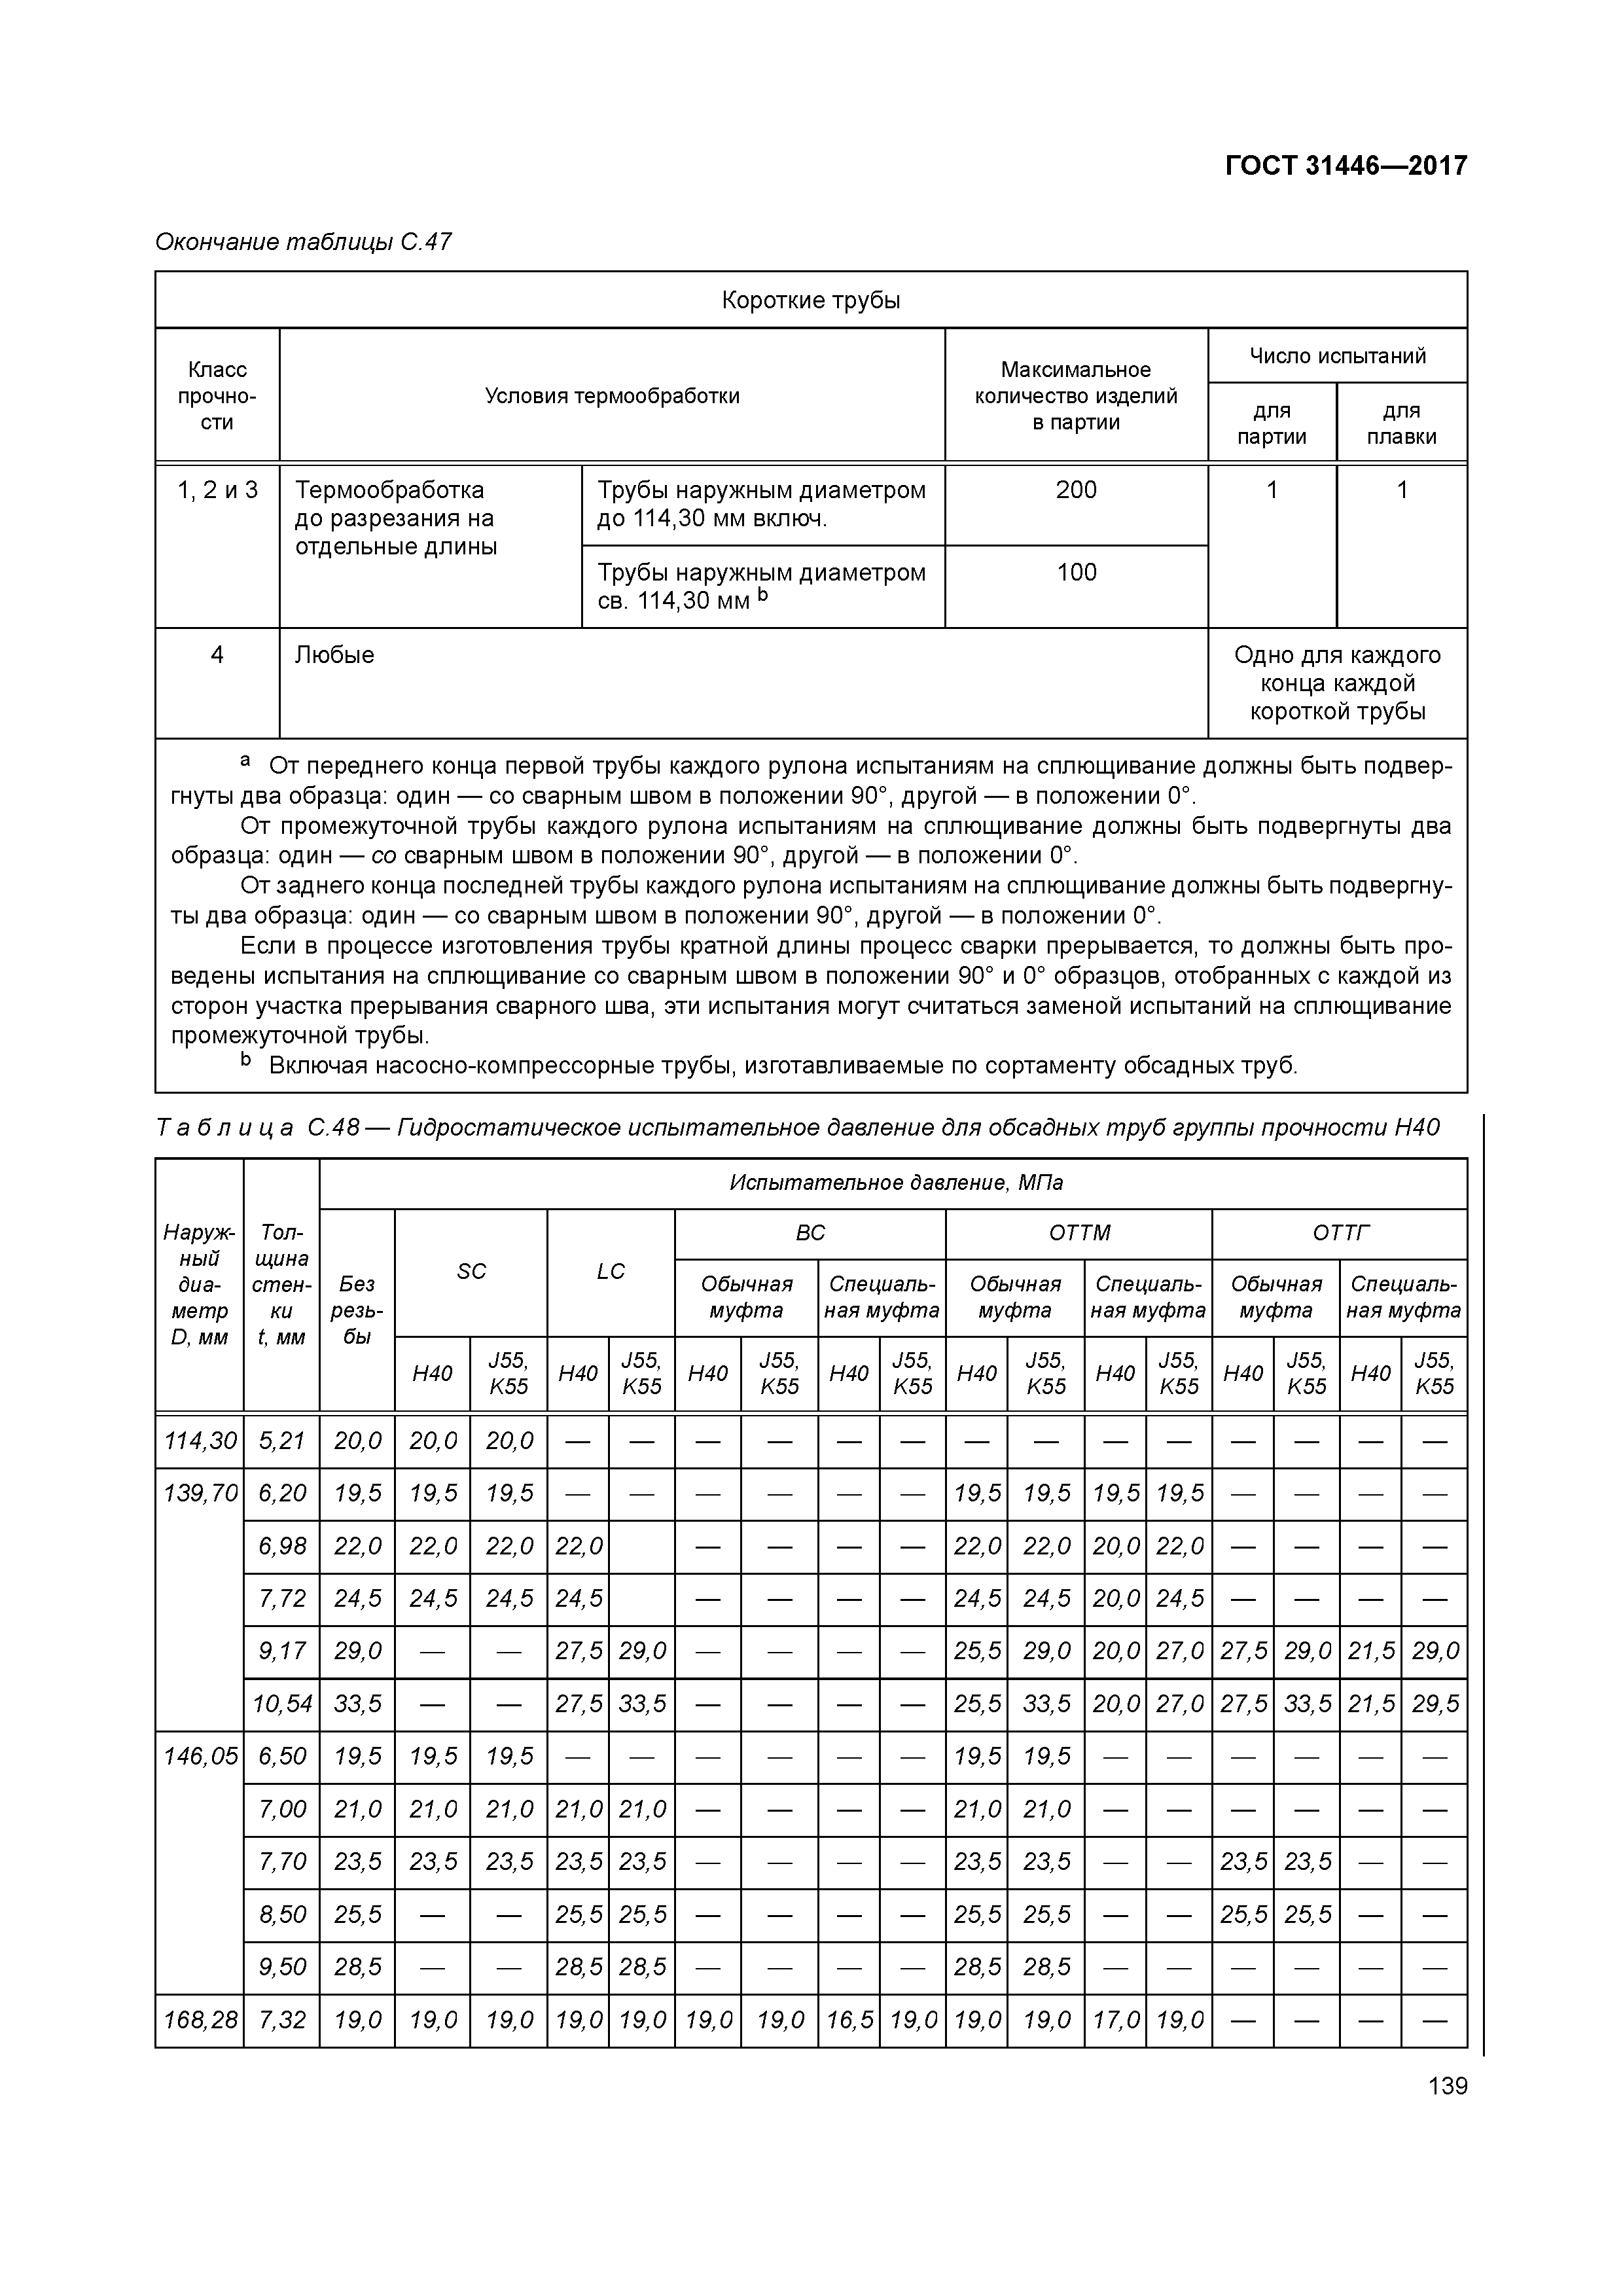 Таблица обсадных труб и стенок 31446-2017